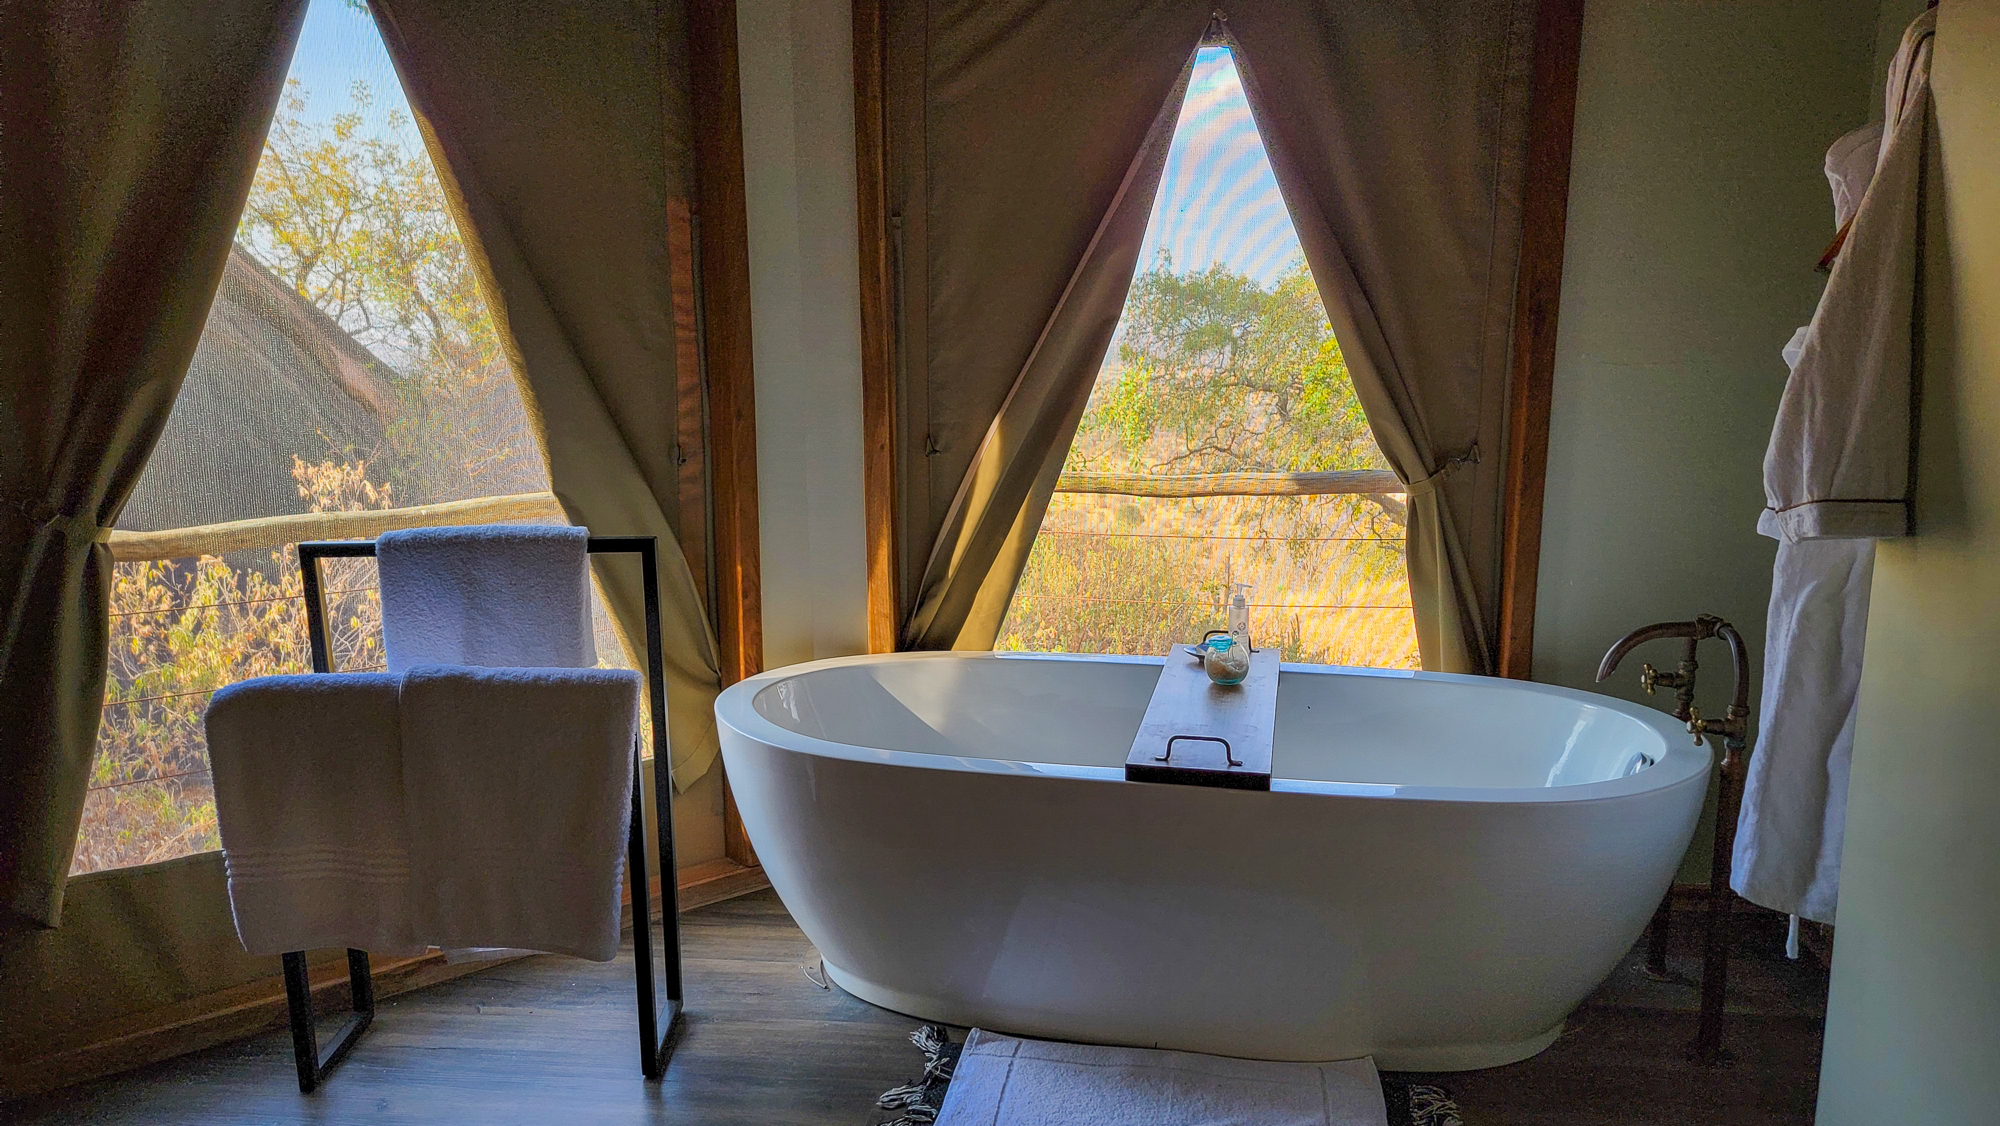 Safari Lodge Bathroom in Tanzania